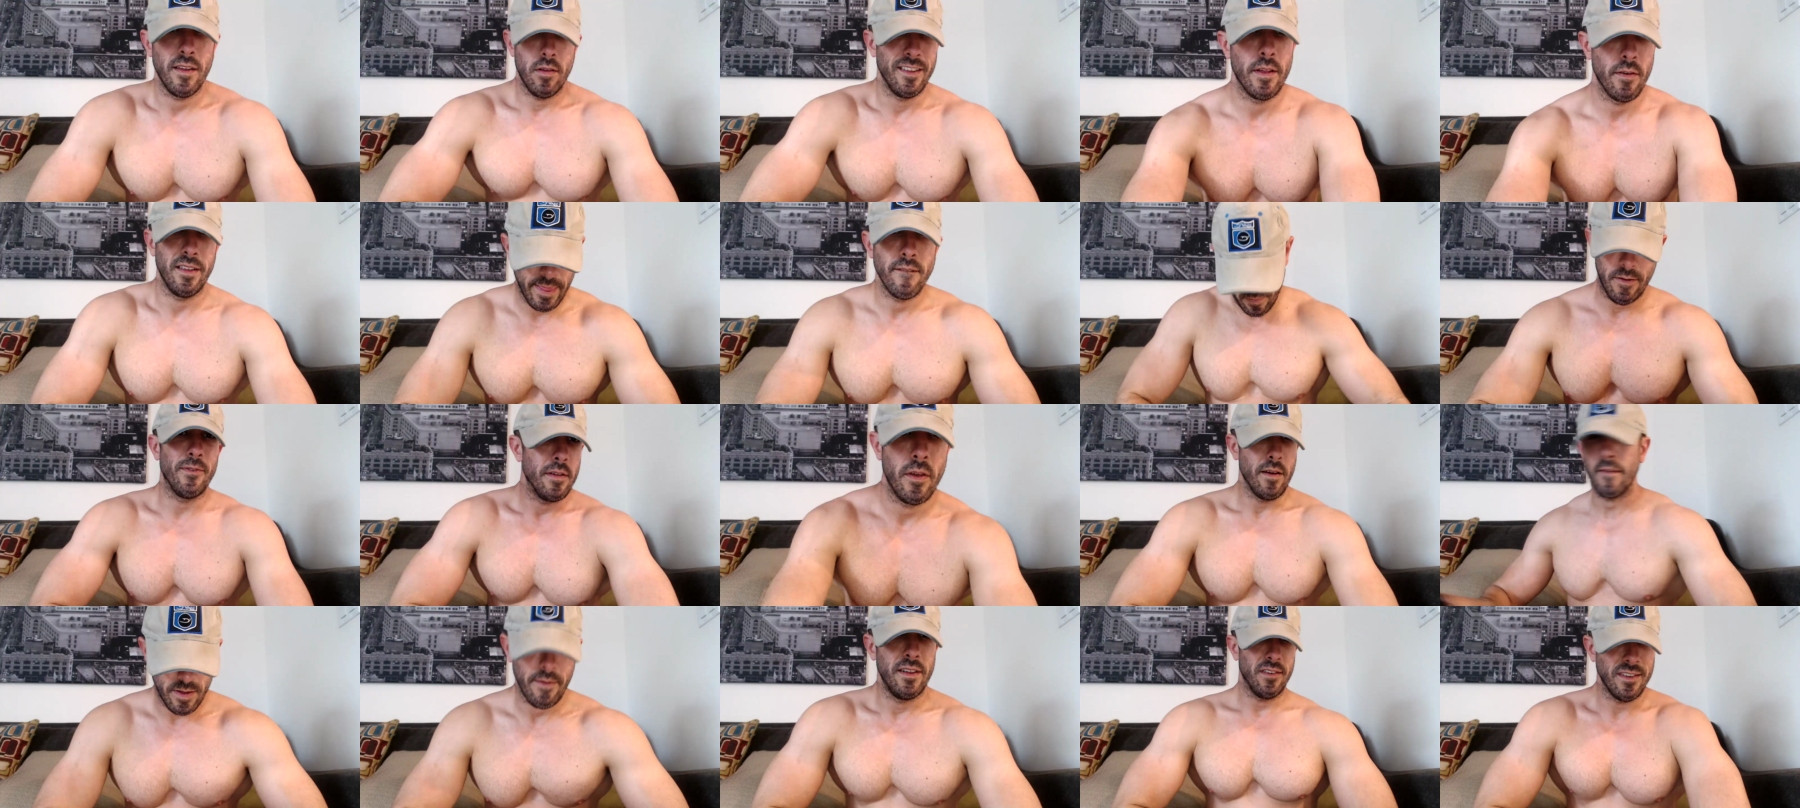 Nerdmuscles2x  14-05-2021 Male Porn